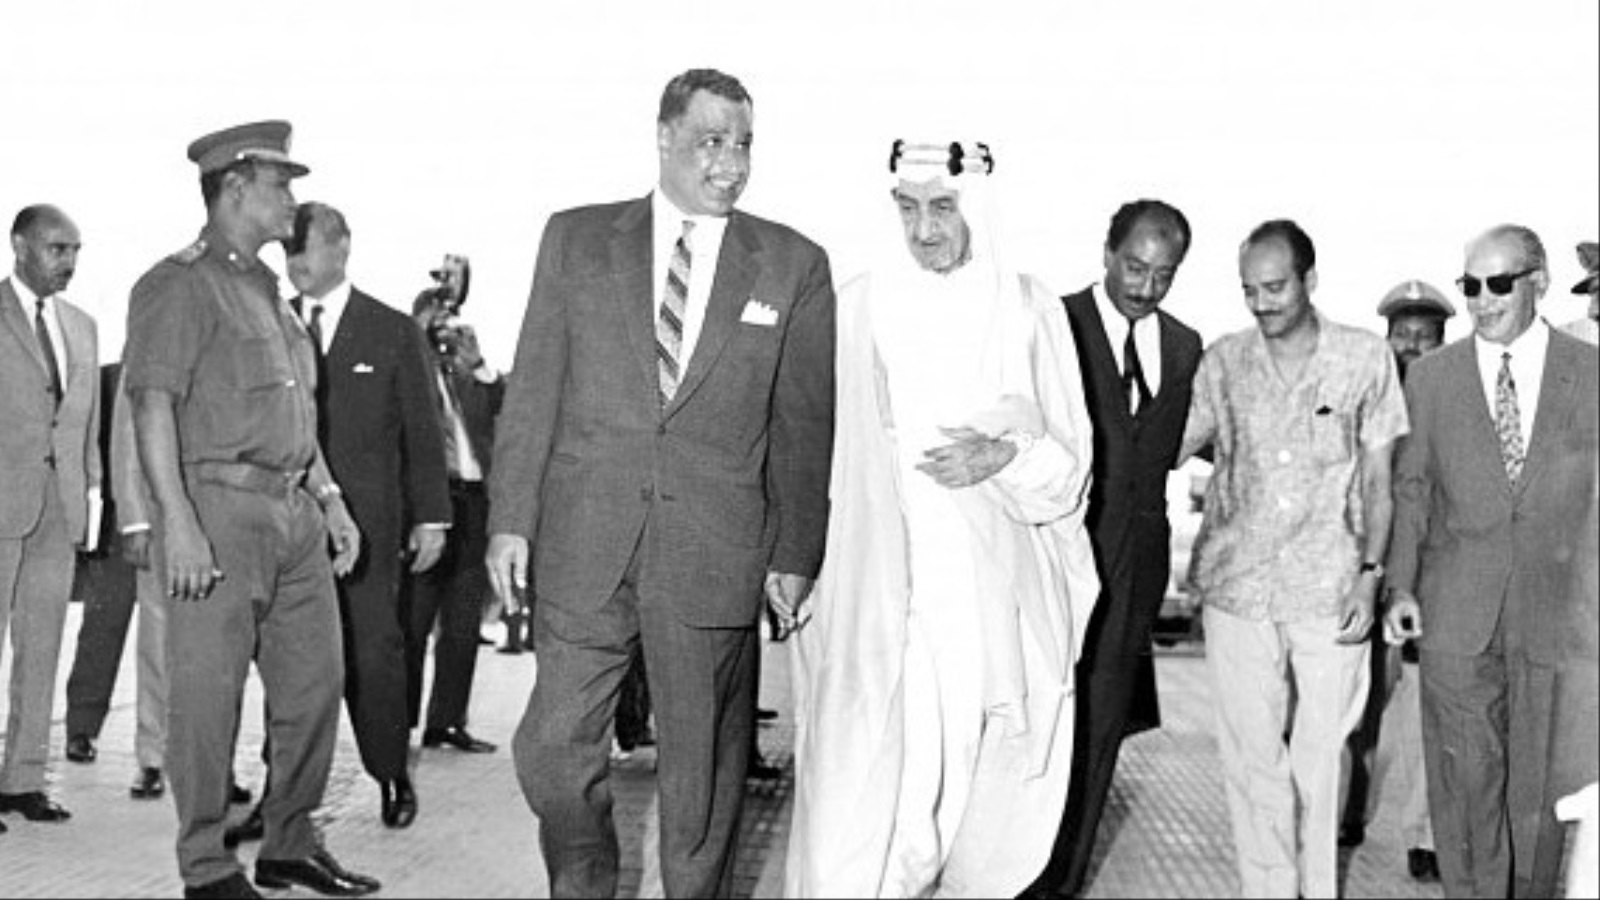 لم يعد عبد الناصر ولا أفكاره يشكلان تهديدا حقيقيا للسعودية، مما دفع فيصل للتفاهم معه بعد أن اعتراه الضعف حتى عام 1970، بينما كان خصومه الأوائل داخل السعودية، في تحالف ثم عداوة شبيهة بذلك